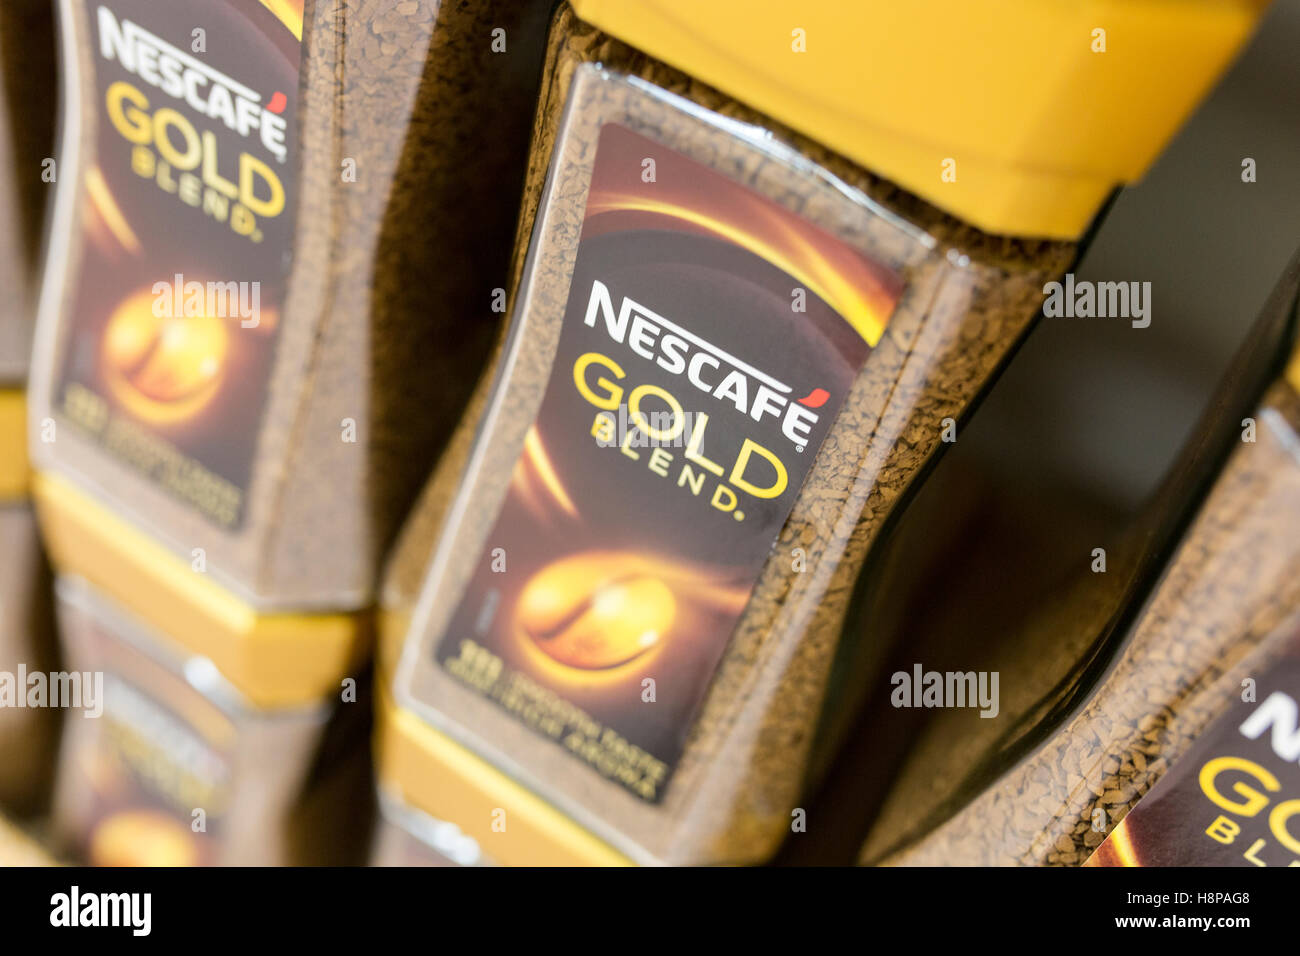 En el interior de una tienda de supermercados británica Nescafé Gold blend café instantáneo Foto de stock